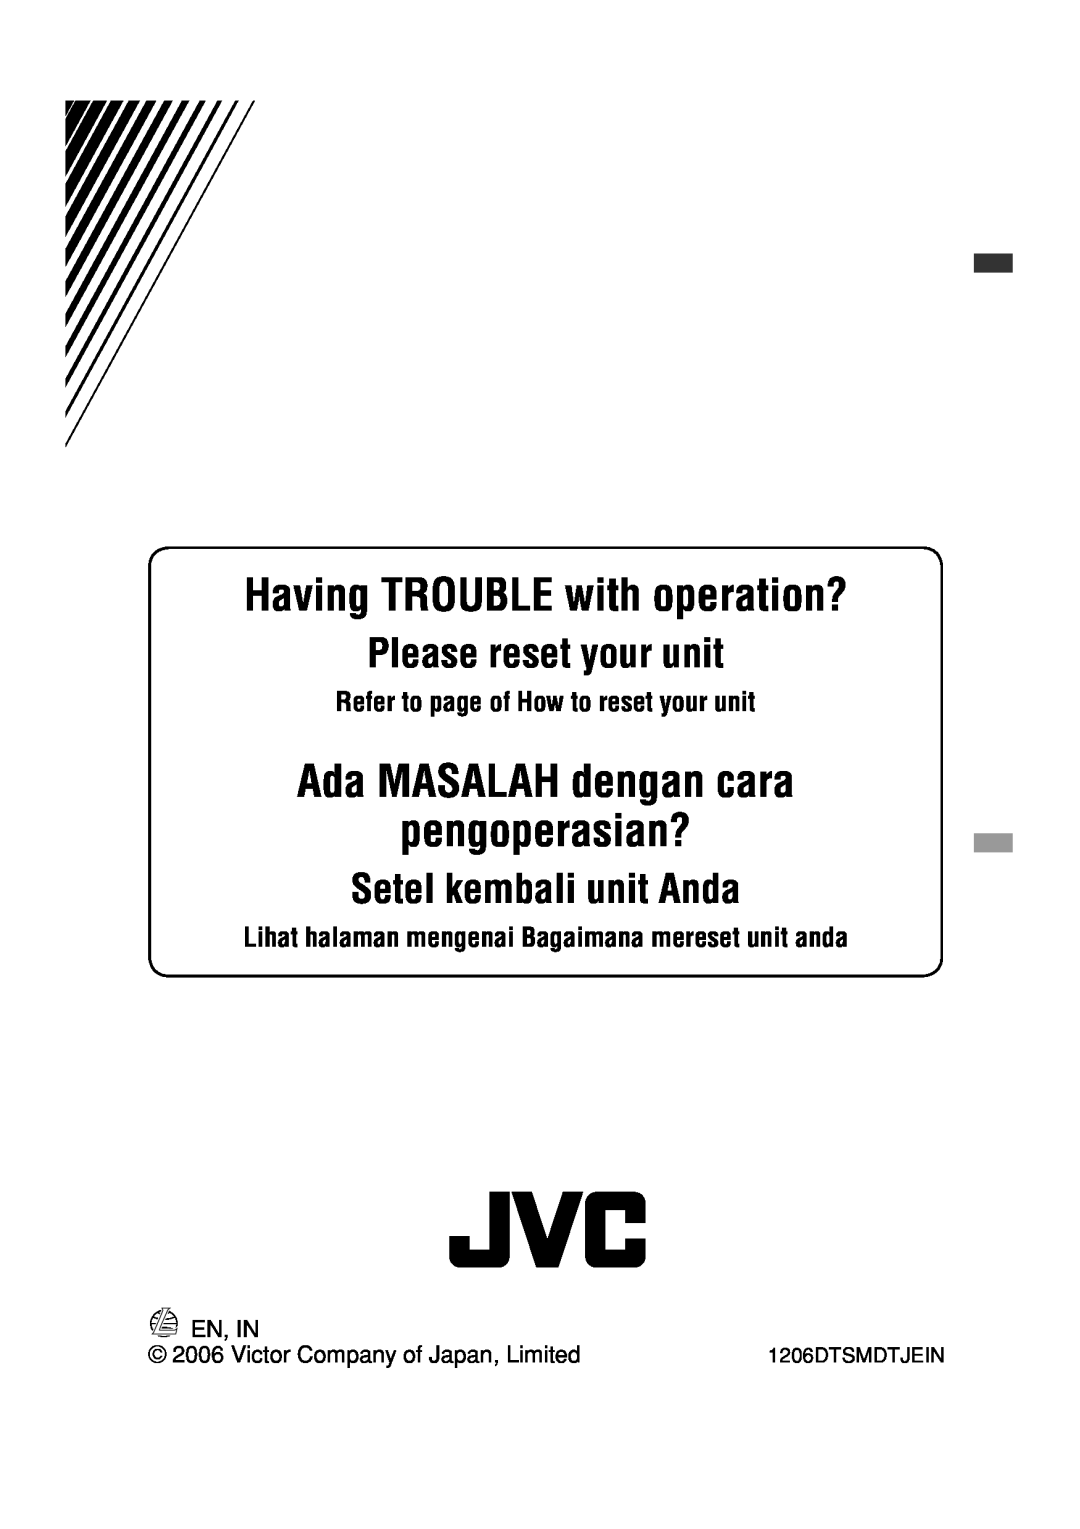 JVC GET0425-001A Ada MASALAH dengan cara pengoperasian?, Setel kembali unit Anda, Having TROUBLE with operation?, En, In 